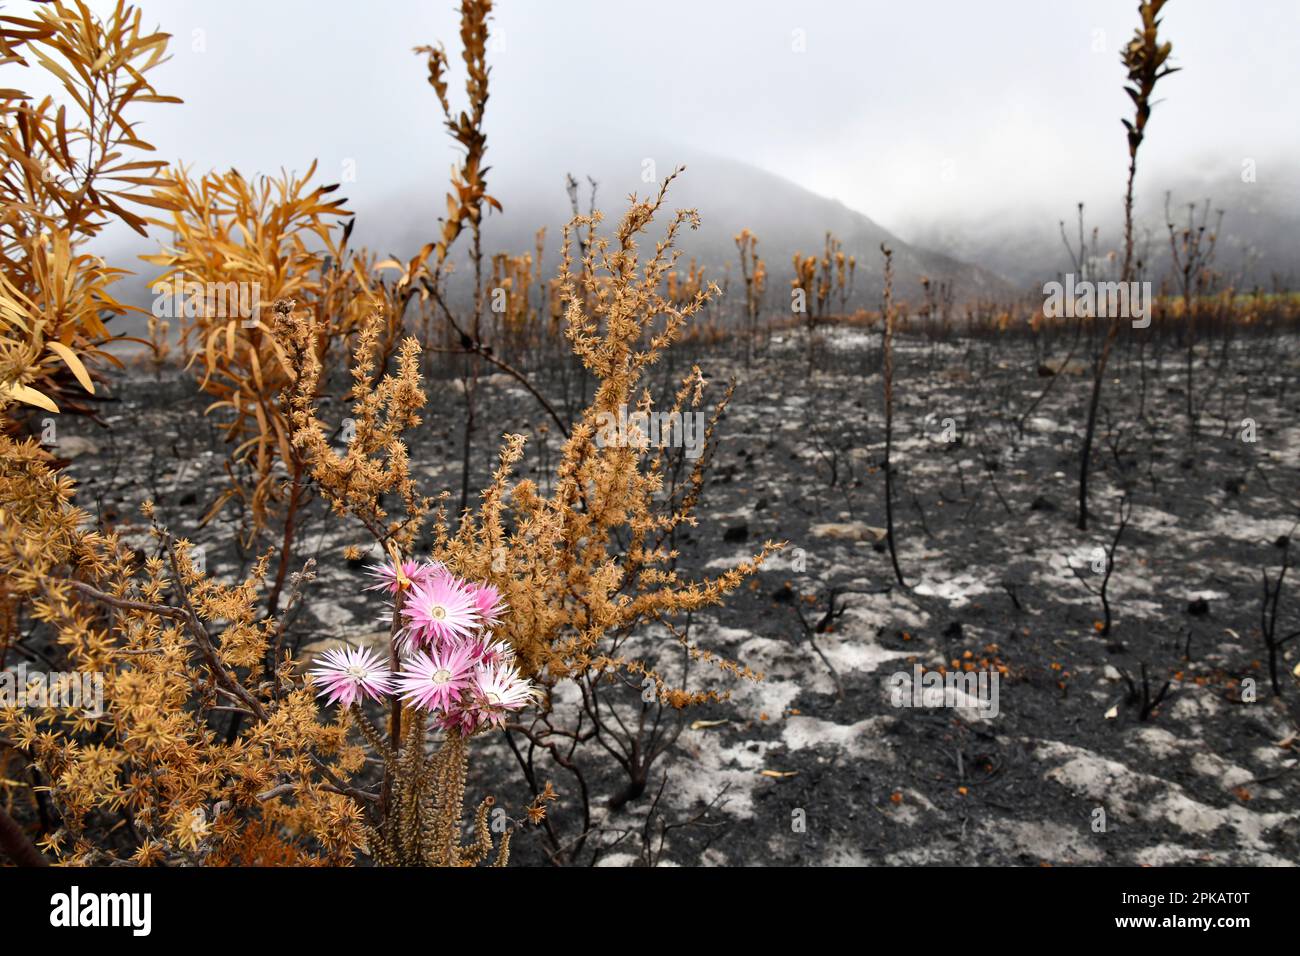 Planta de fynbos (Phaenocoma prolifera), recuperándose después de un incendio dañino, Kleinmond, Sudáfrica. Foto de stock